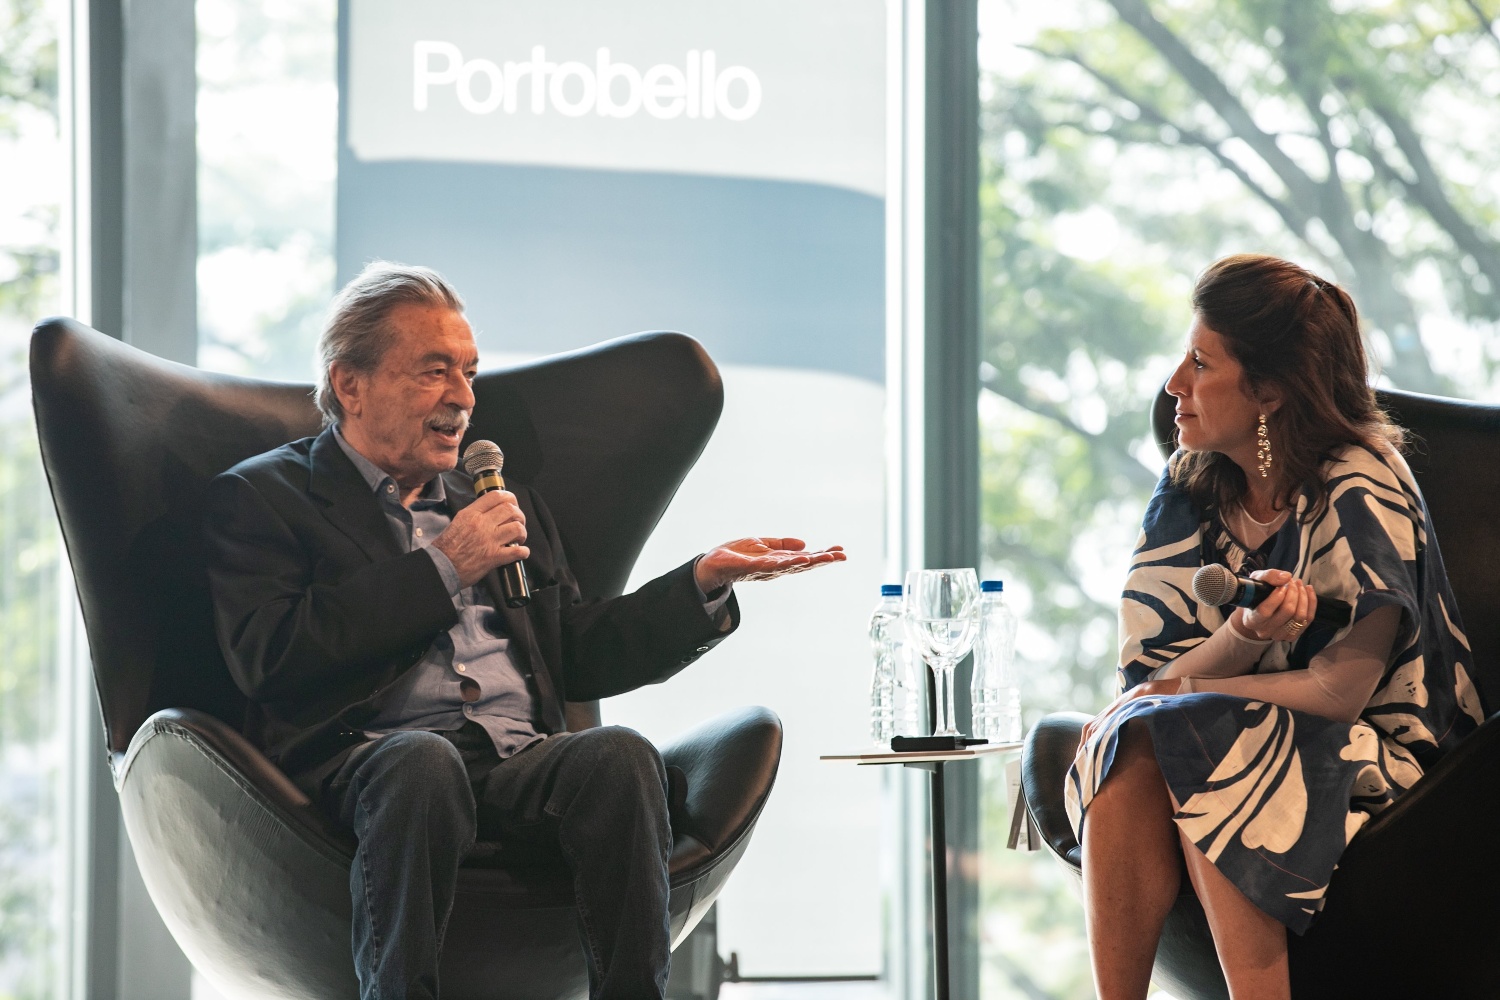 A entrevista com Paulo Mendes da Rocha foi um dos destaques de evento promovido pela Portobello (Foto: Archtrends)